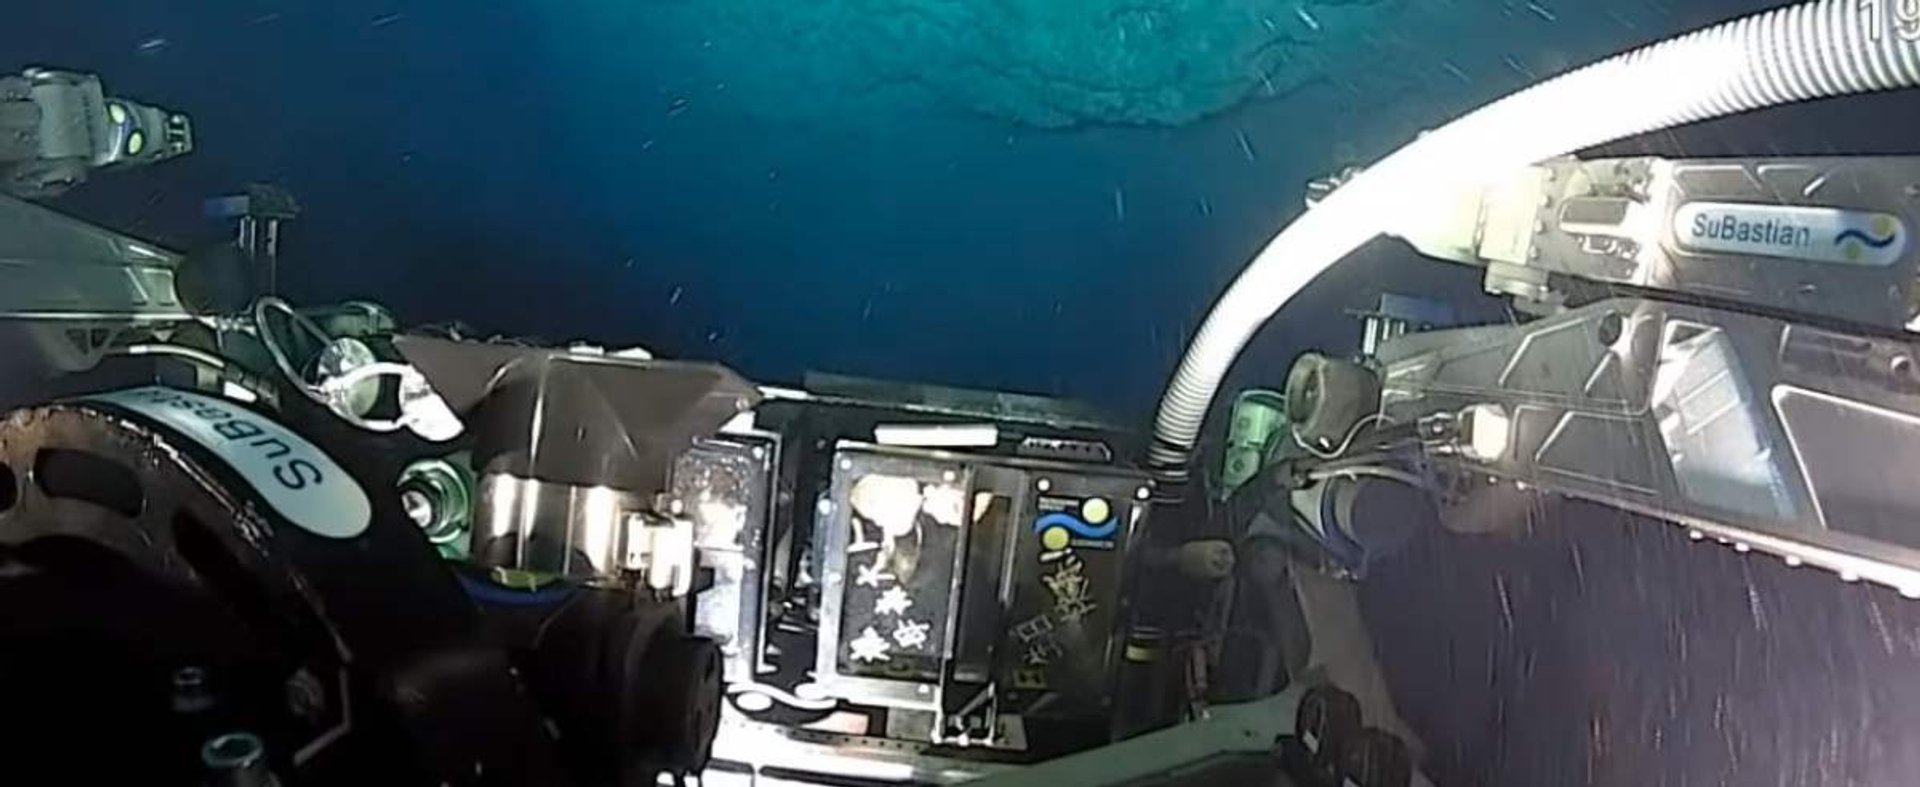 odkrycie na dnie oceanu